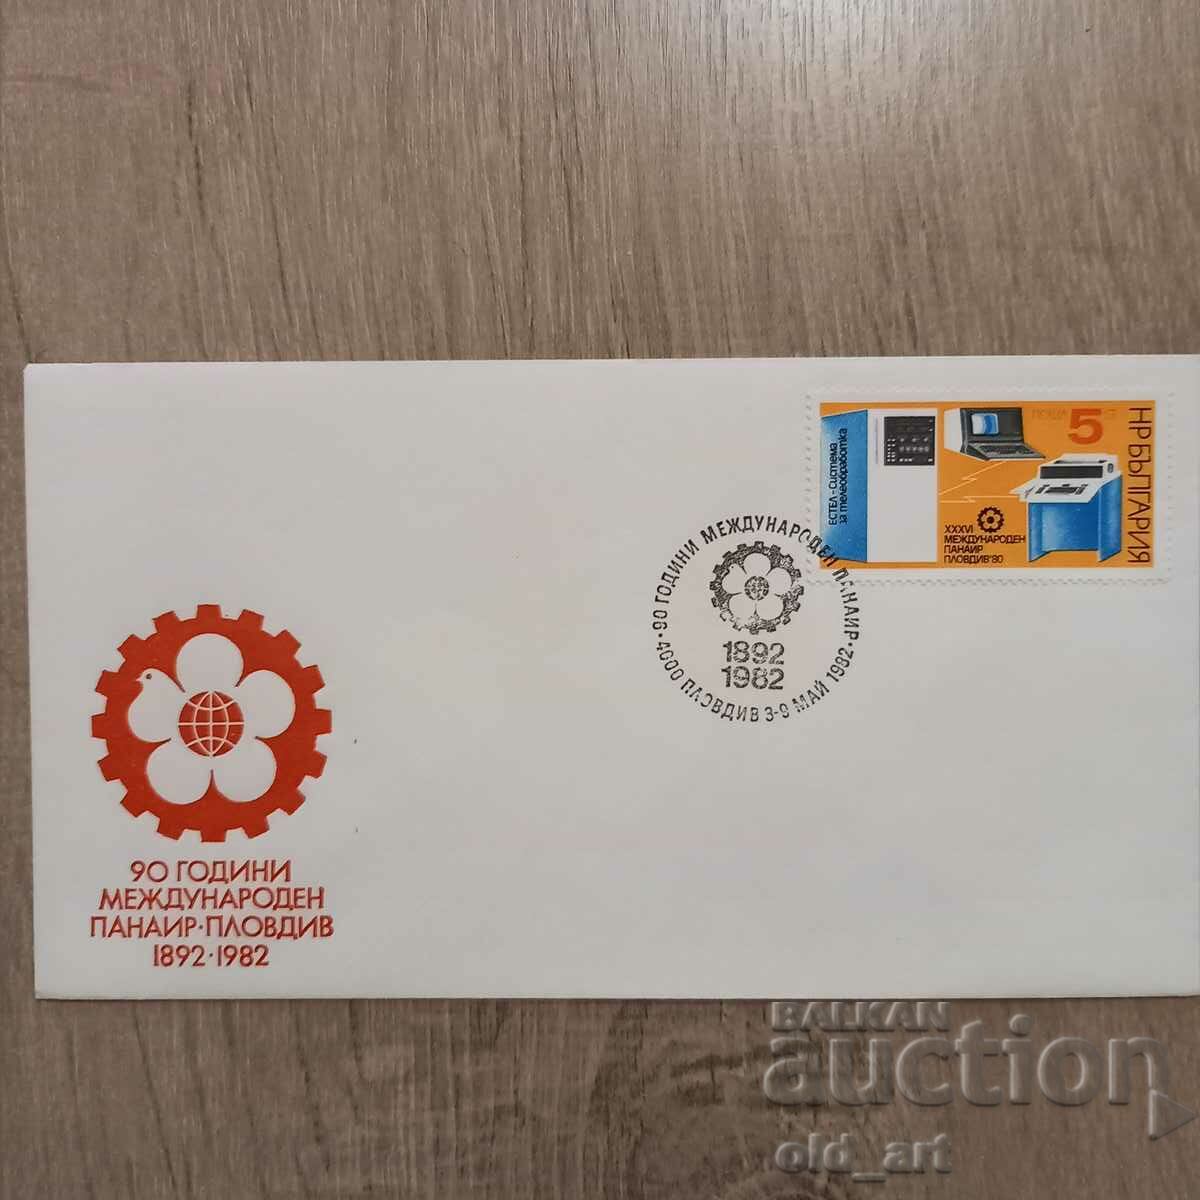 Postal envelope - 90th International Fair Plovdiv 1982